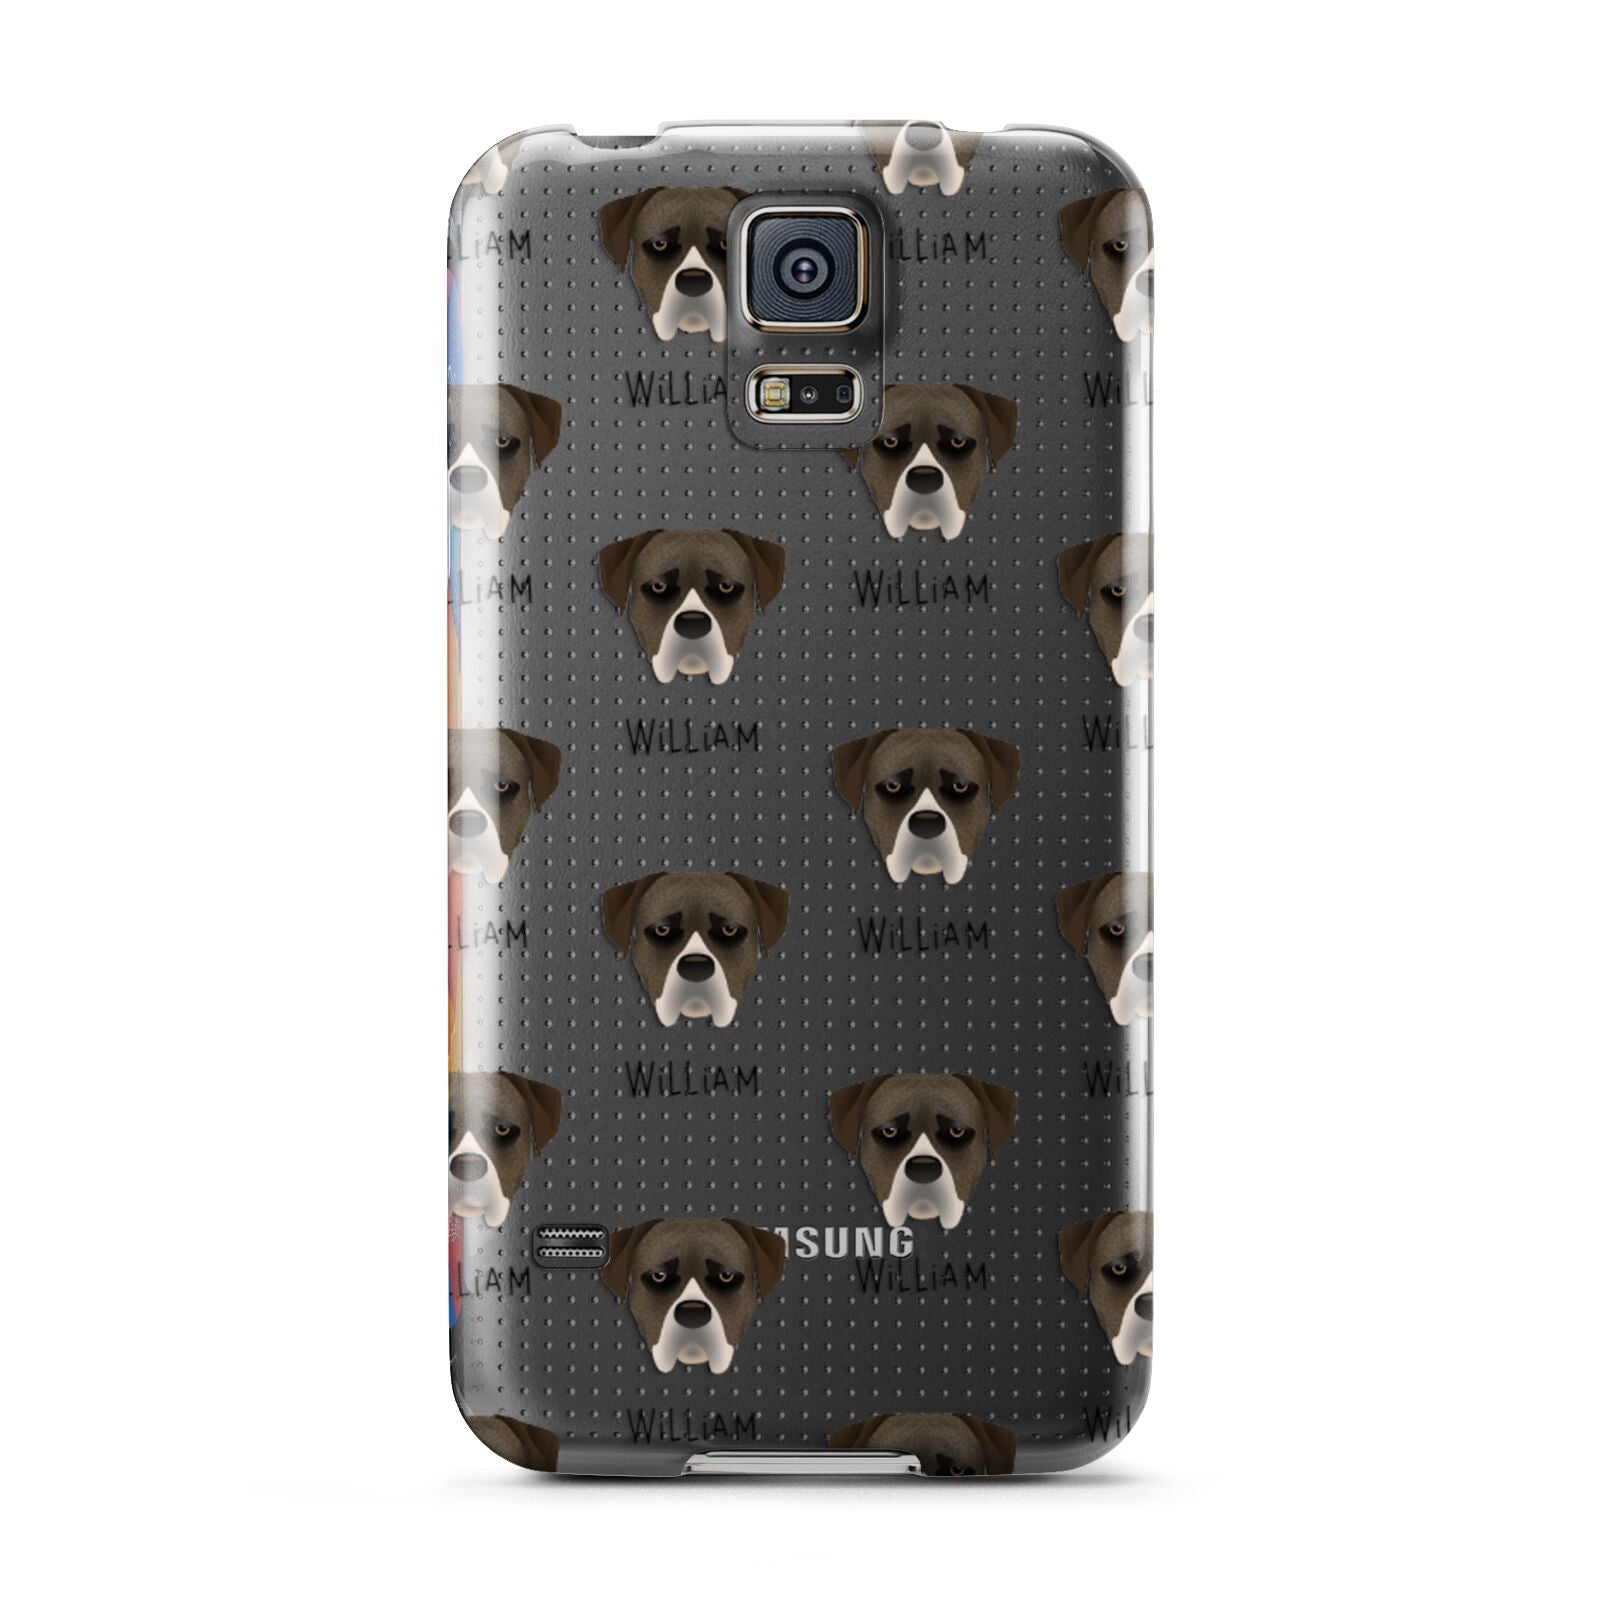 Boerboel Icon with Name Samsung Galaxy S5 Case